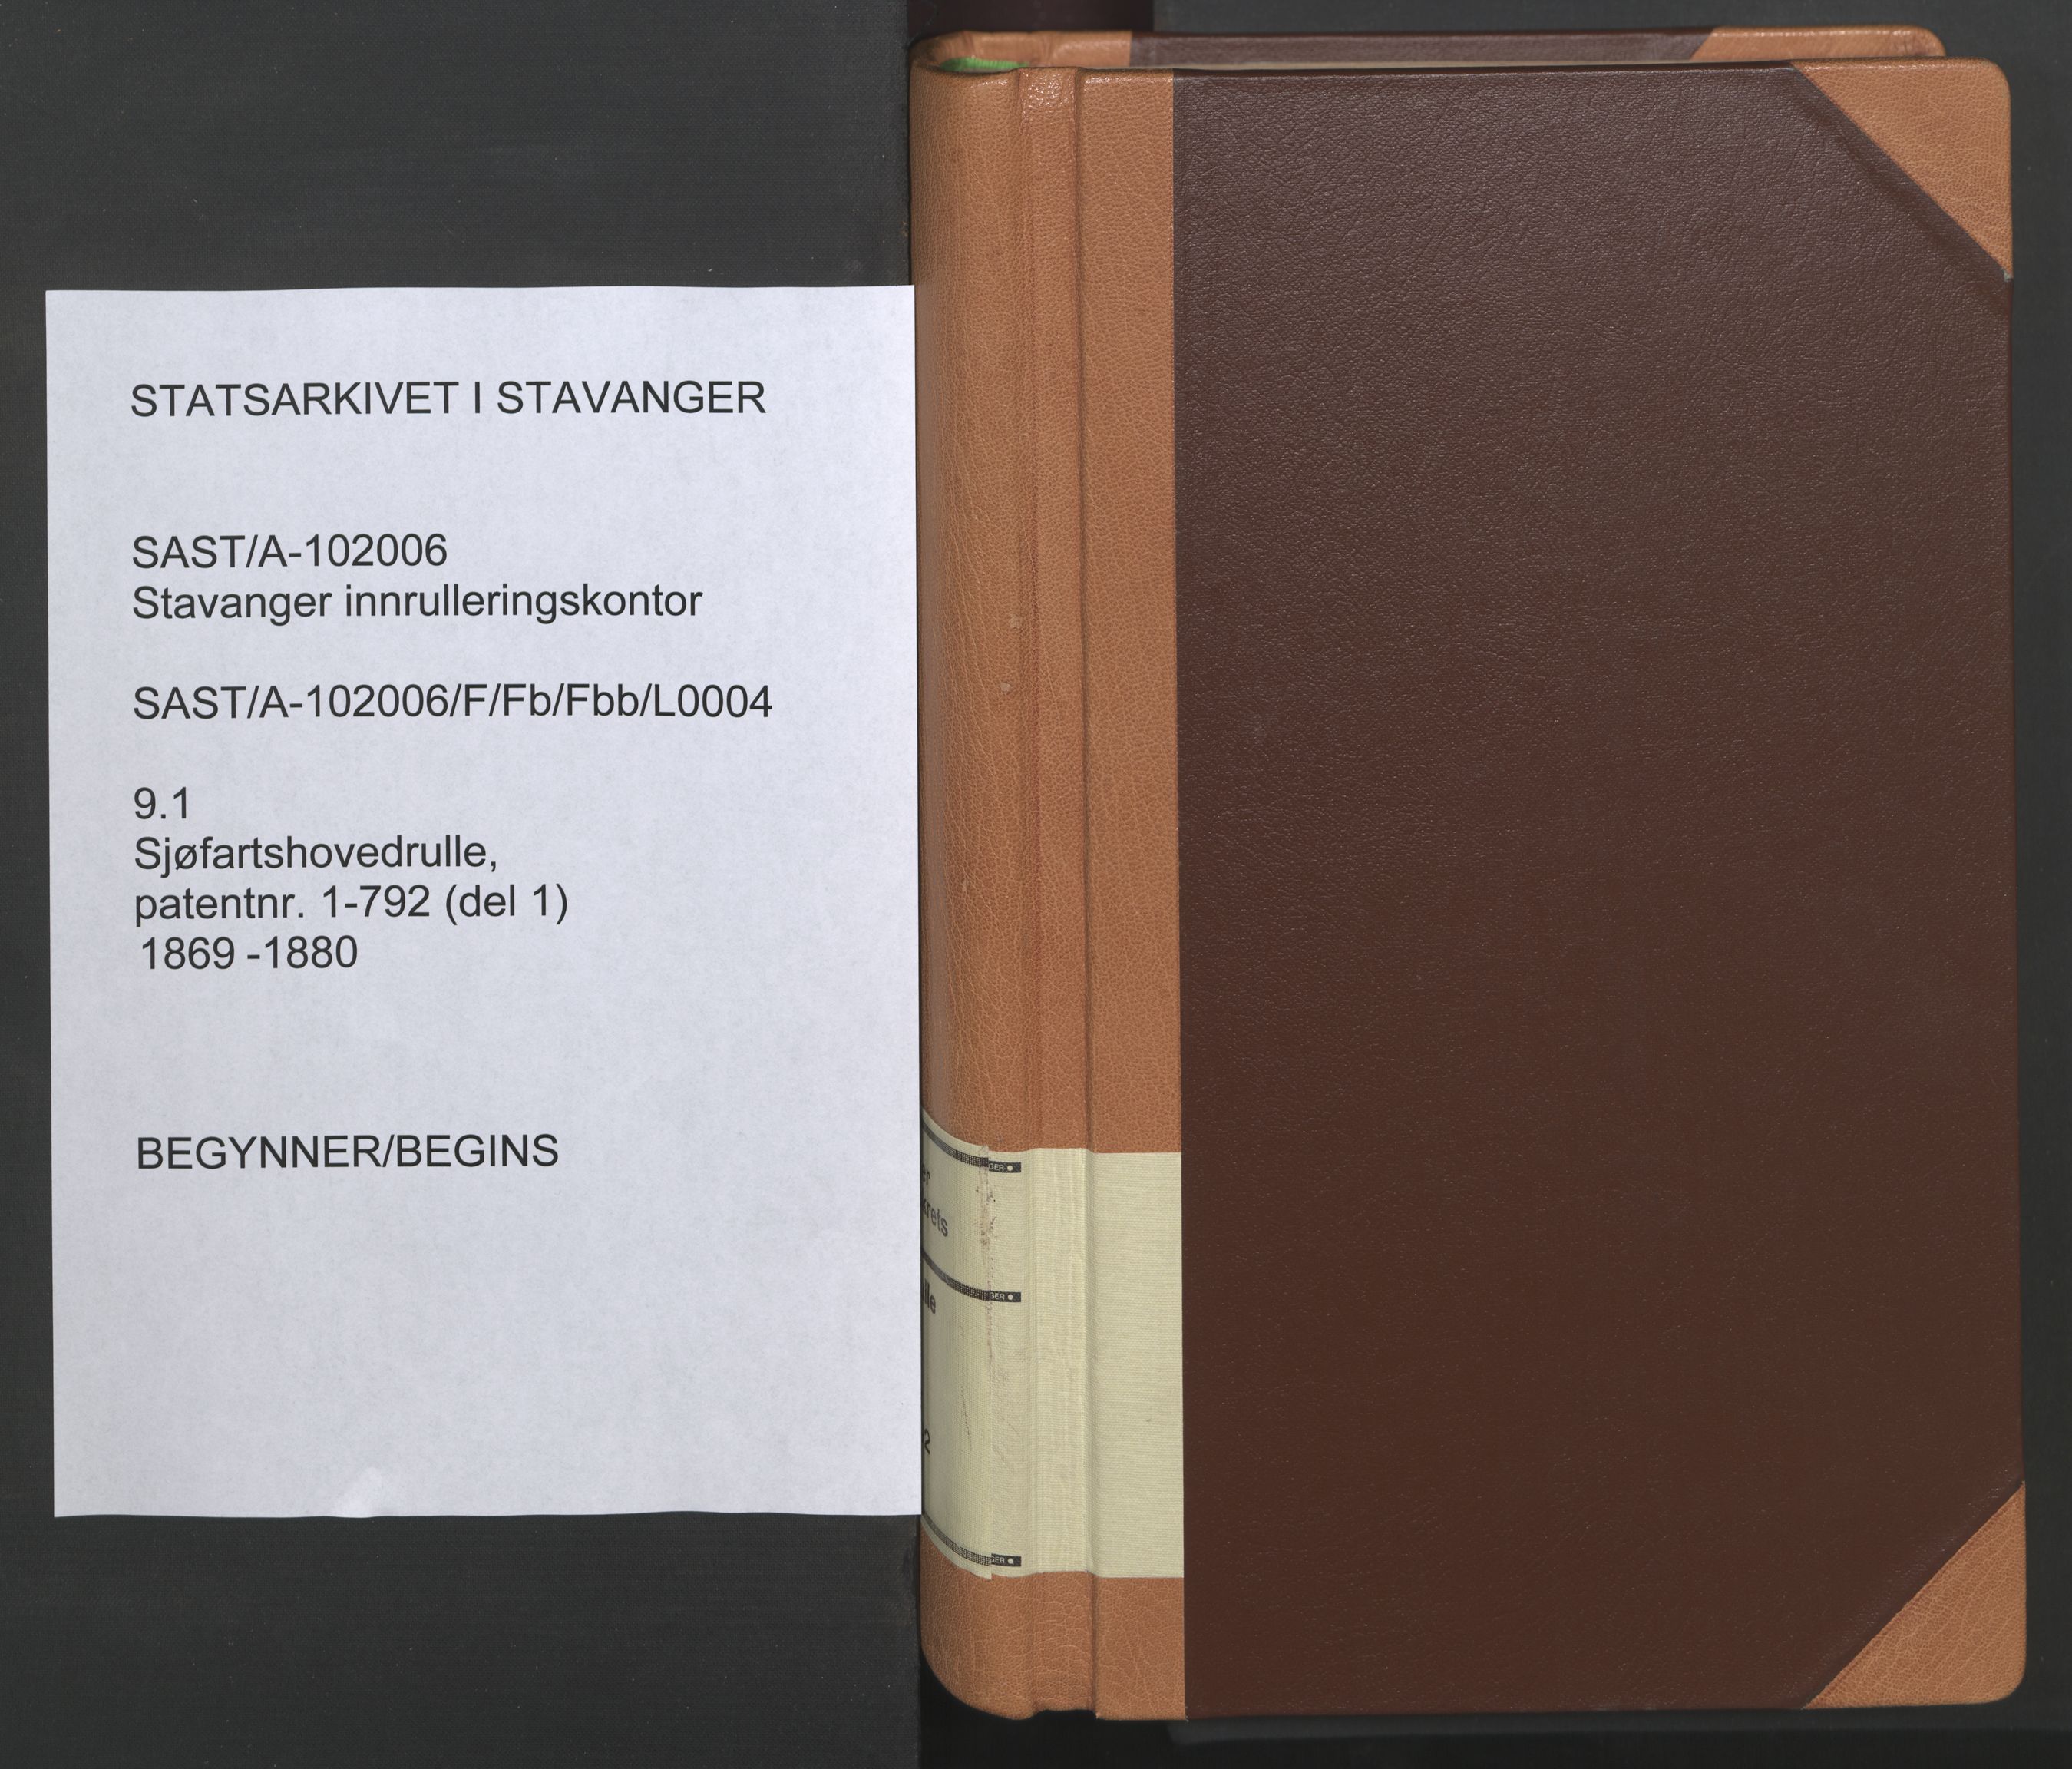 Stavanger sjømannskontor, SAST/A-102006/F/Fb/Fbb/L0004: Sjøfartshovedrulle, patentnr. 1-792 (del 1), 1869-1880, p. 1